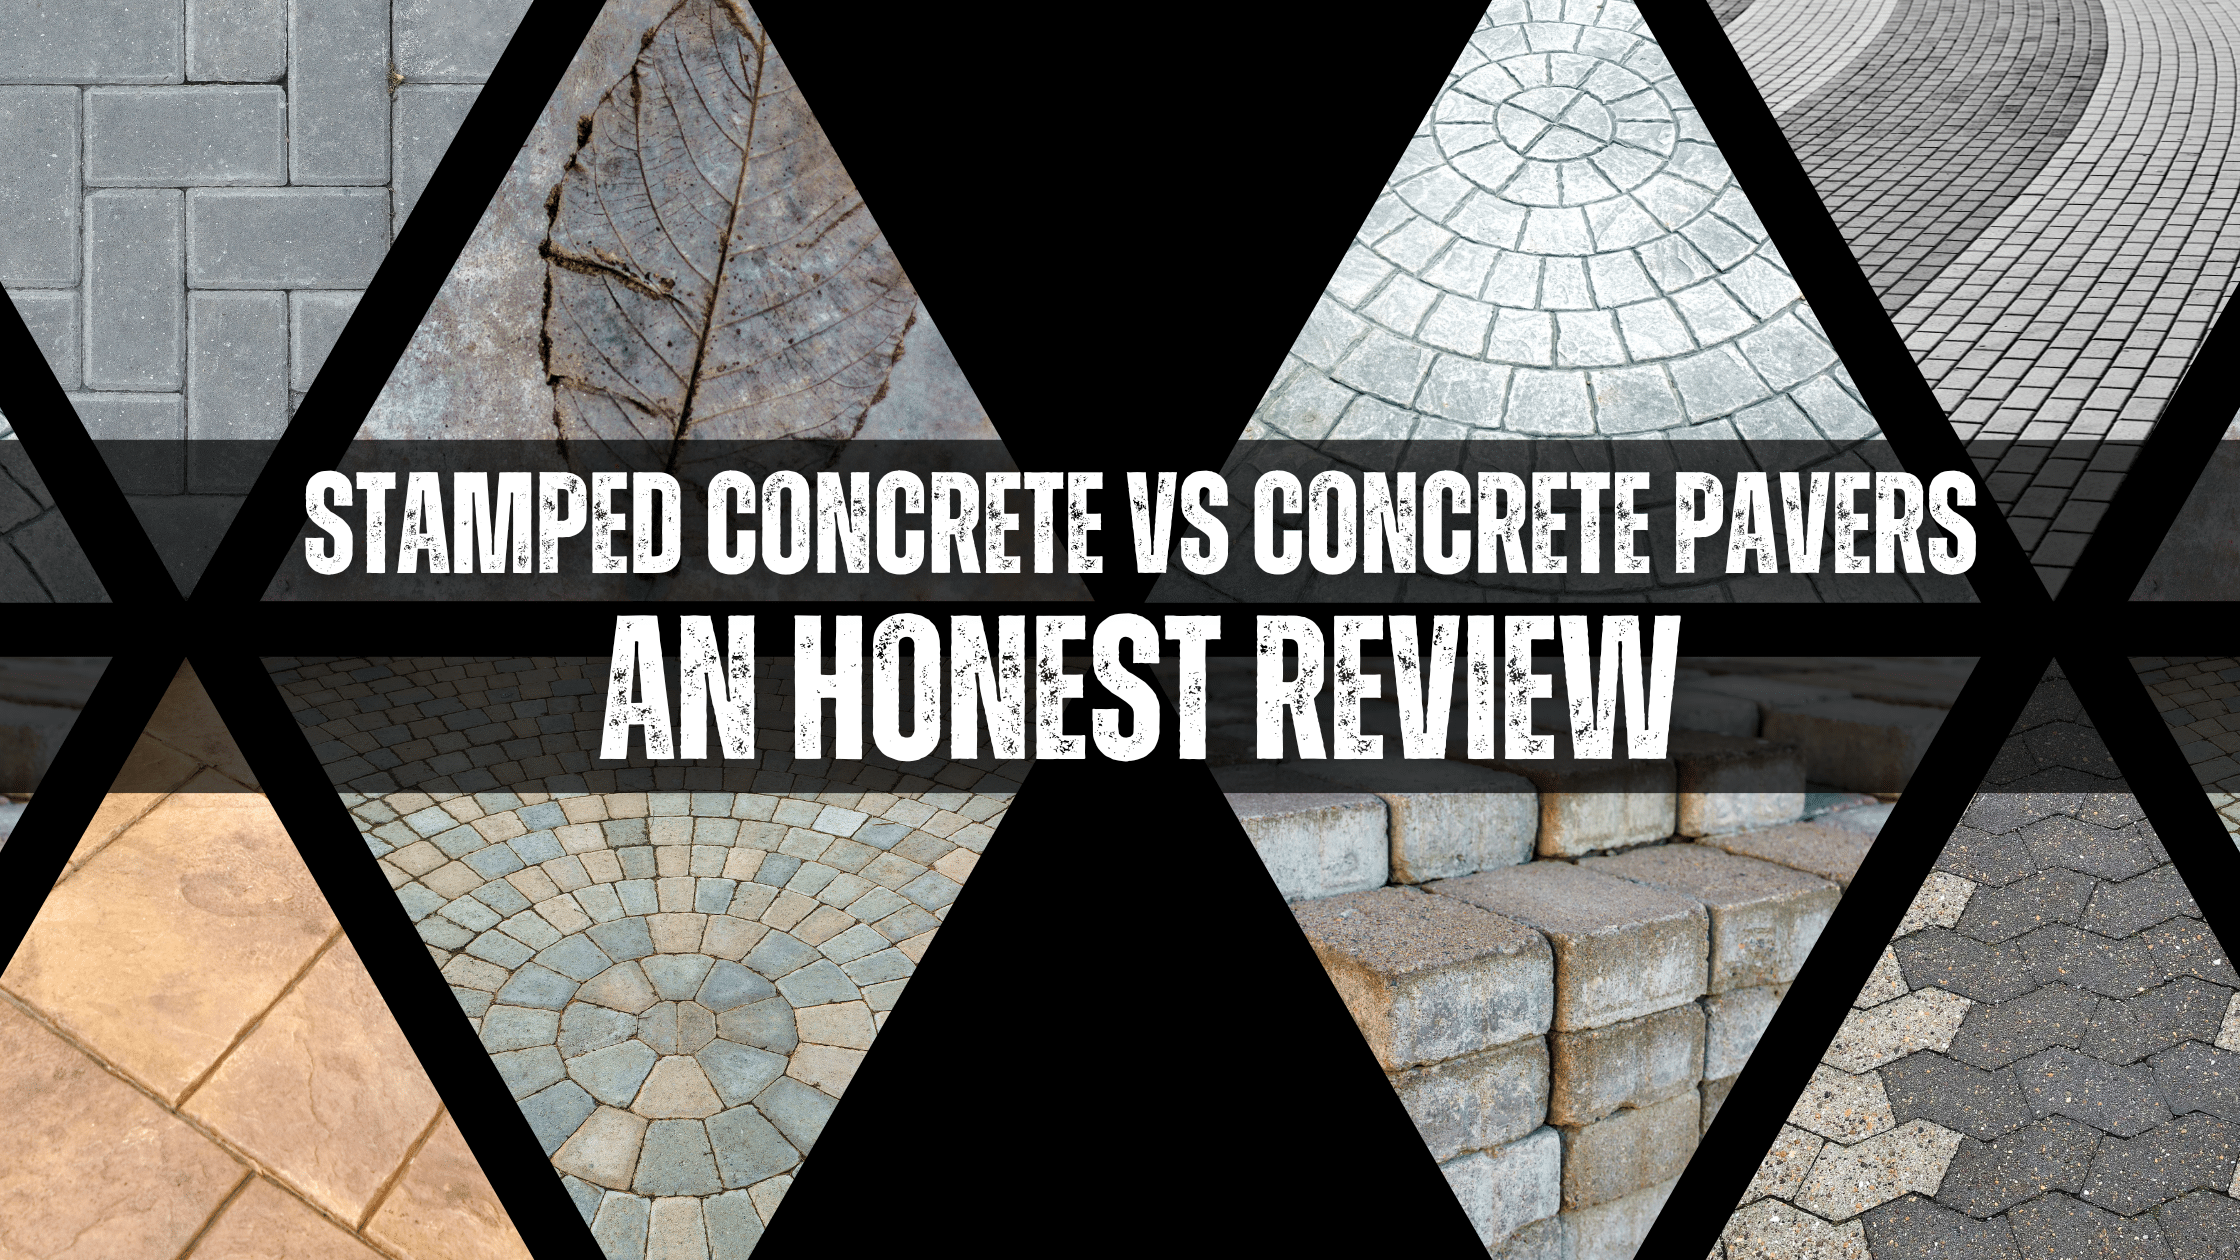 Stamped Concrete vs Concrete Pavers for driveway, patio, etc.